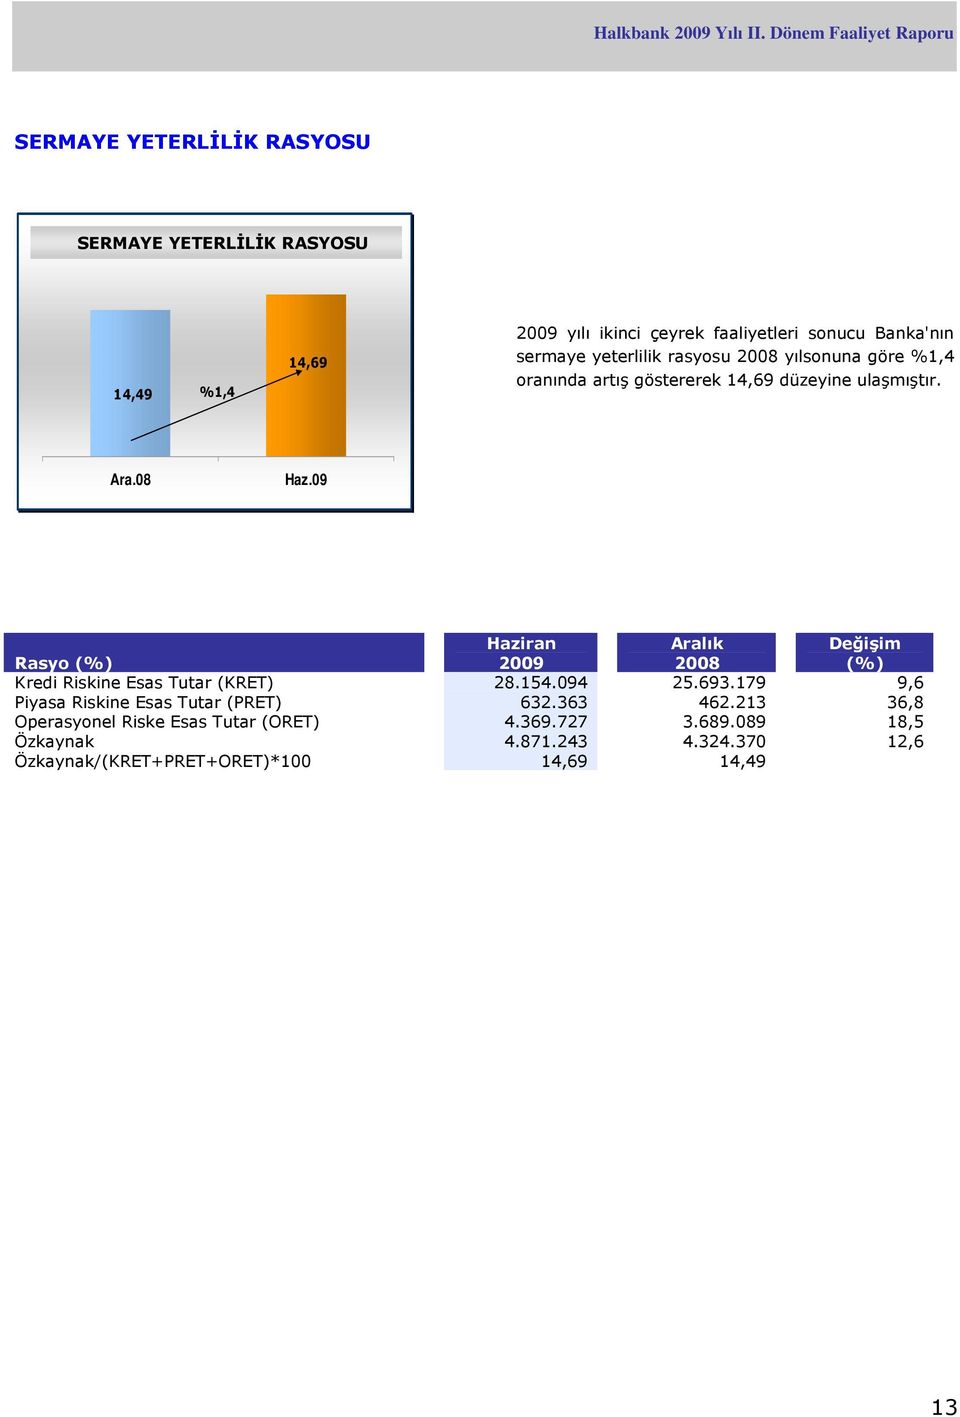 08 Rasyo (%) Haziran 2009 Aralık 2008 Değişim (%) Kredi Riskine Esas Tutar (KRET) 28.154.094 25.693.